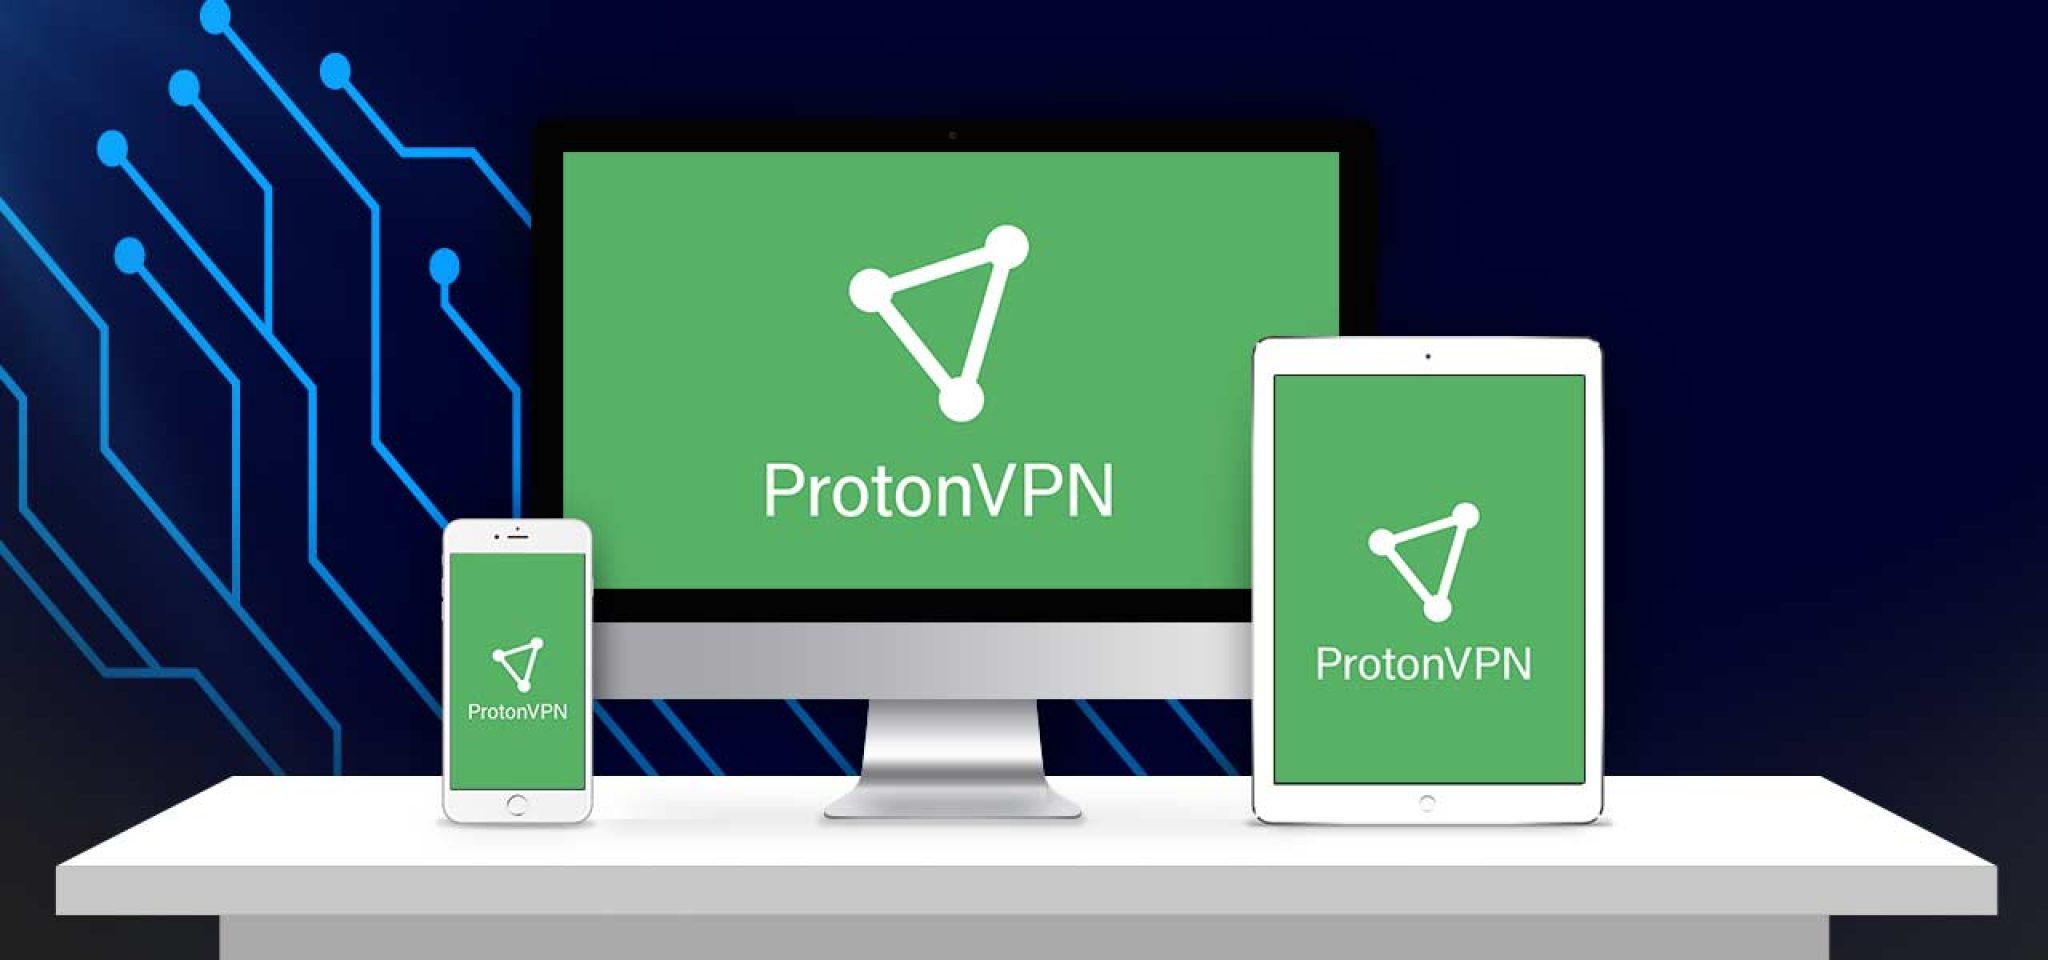 Vpn подписка купить. Протон впн. VPN-сервис Proton. Proton VPN логотип. Фотон впн.